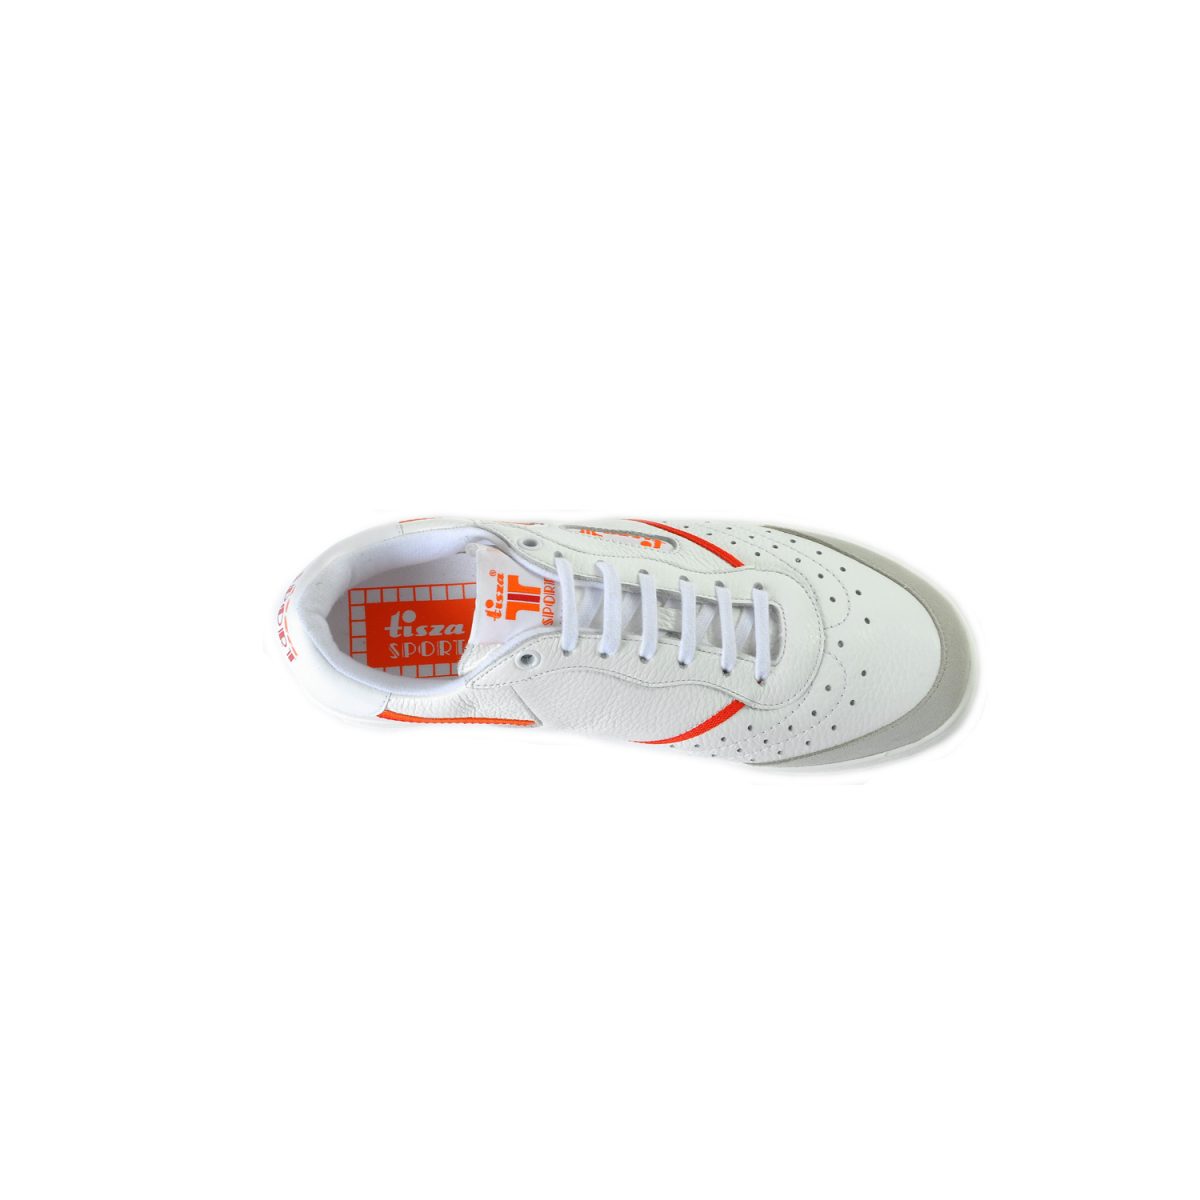 Tisza shoes - Sport - White-red-orange